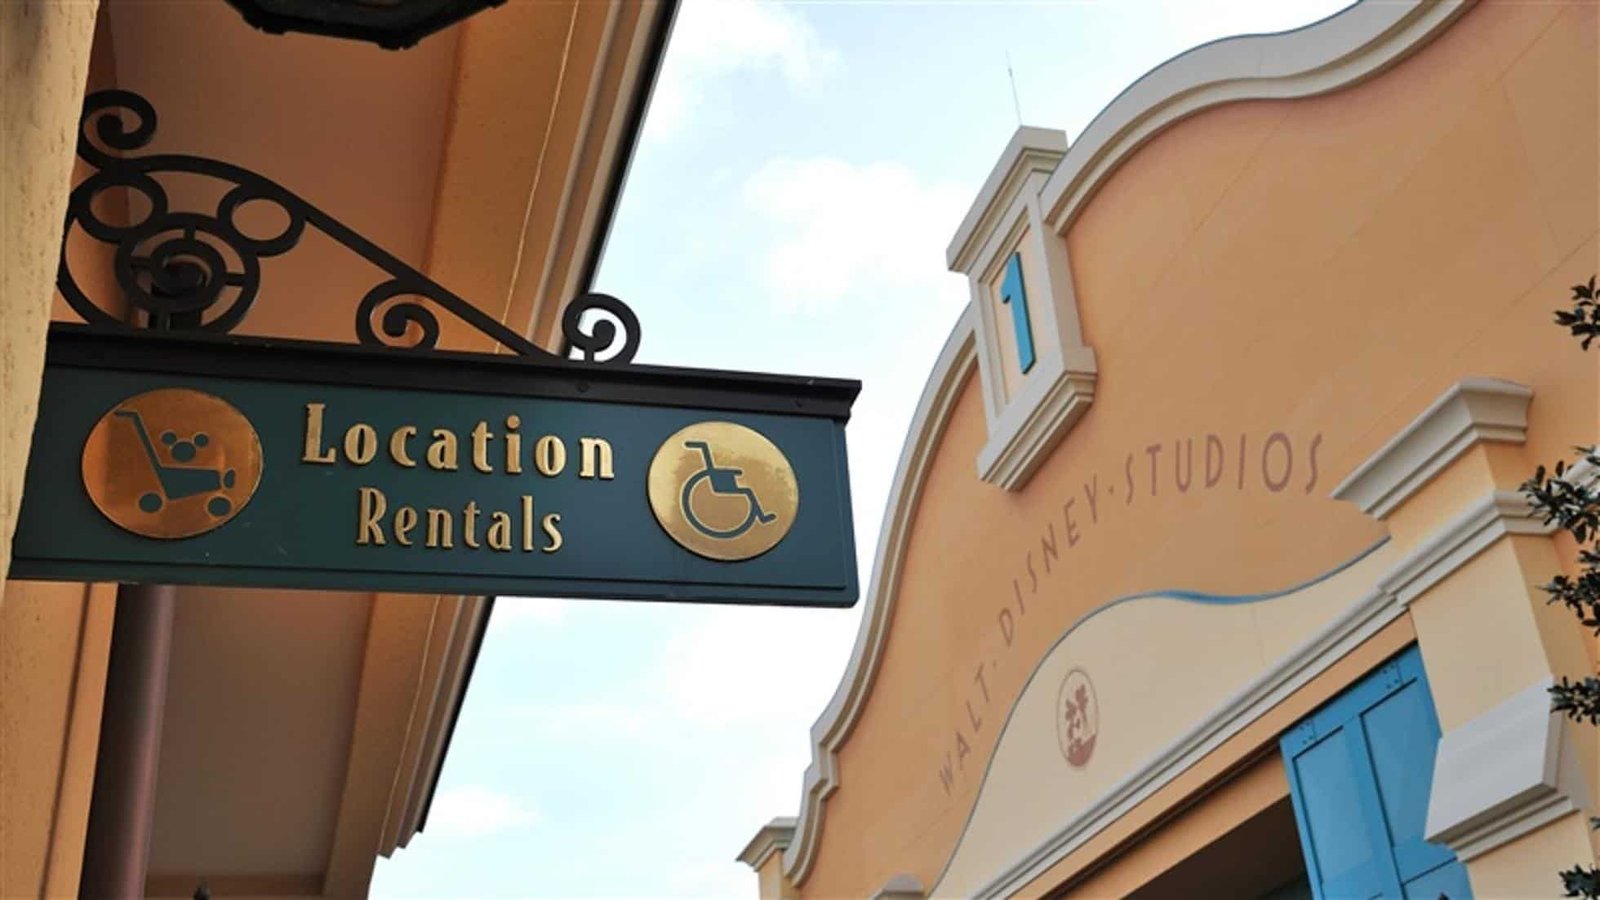 Un panneau indiquant « location d'emplacements » avec une palette d'artiste et des icônes de fauteuil roulant est suspendu à un support en fer forgé sur un bâtiment aux murs couleur pêche et avec le texte « Disneyland Paris ».